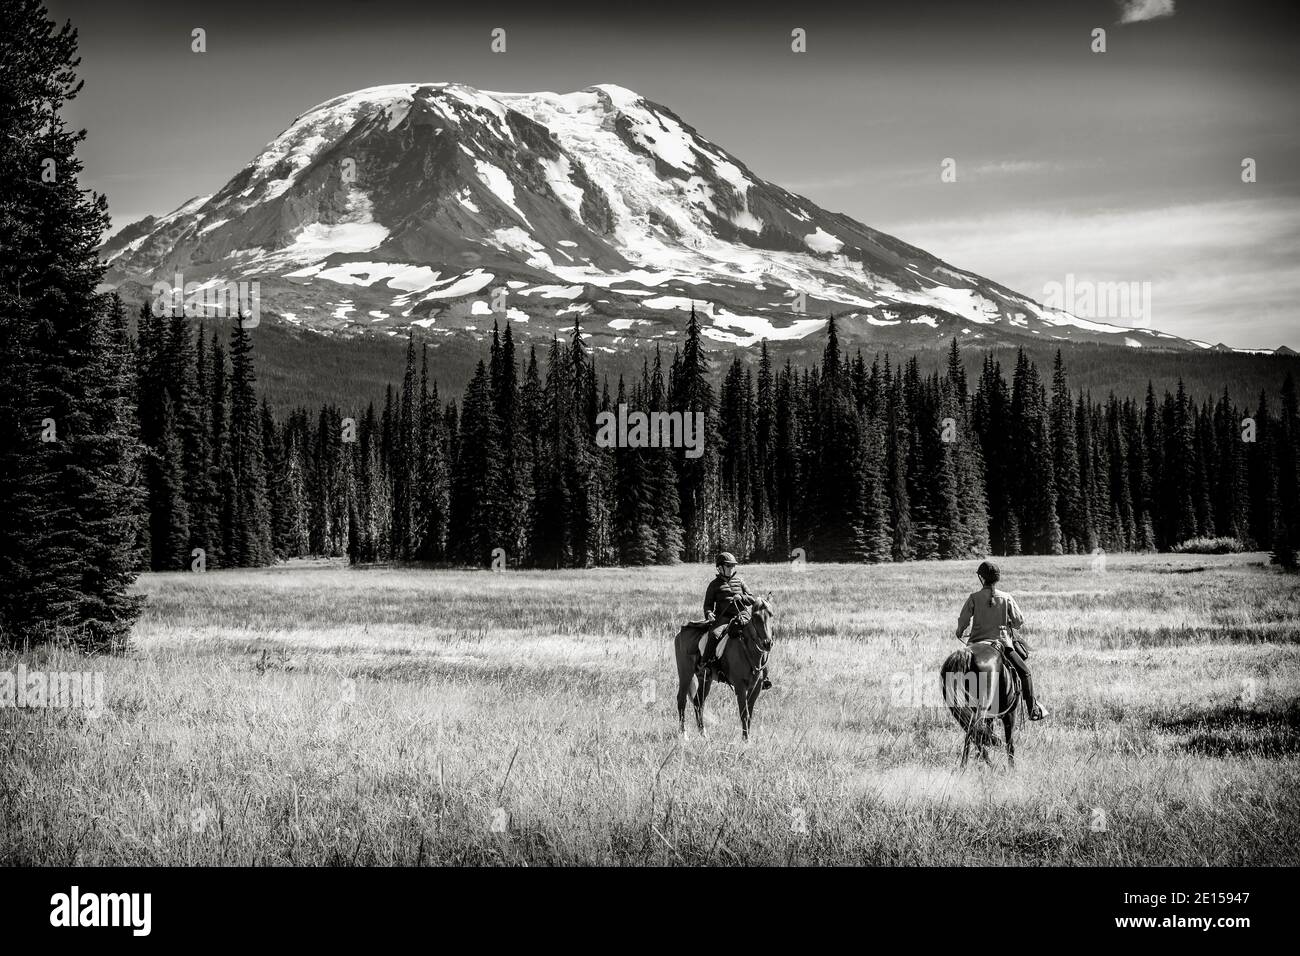 WA17636-00-BW..... WASHINGTON - Cavalieri a cavallo sul Muddy Meadows Trail con Mount Adams sullo sfondo, Gifford Pinchot National Forest. Foto Stock